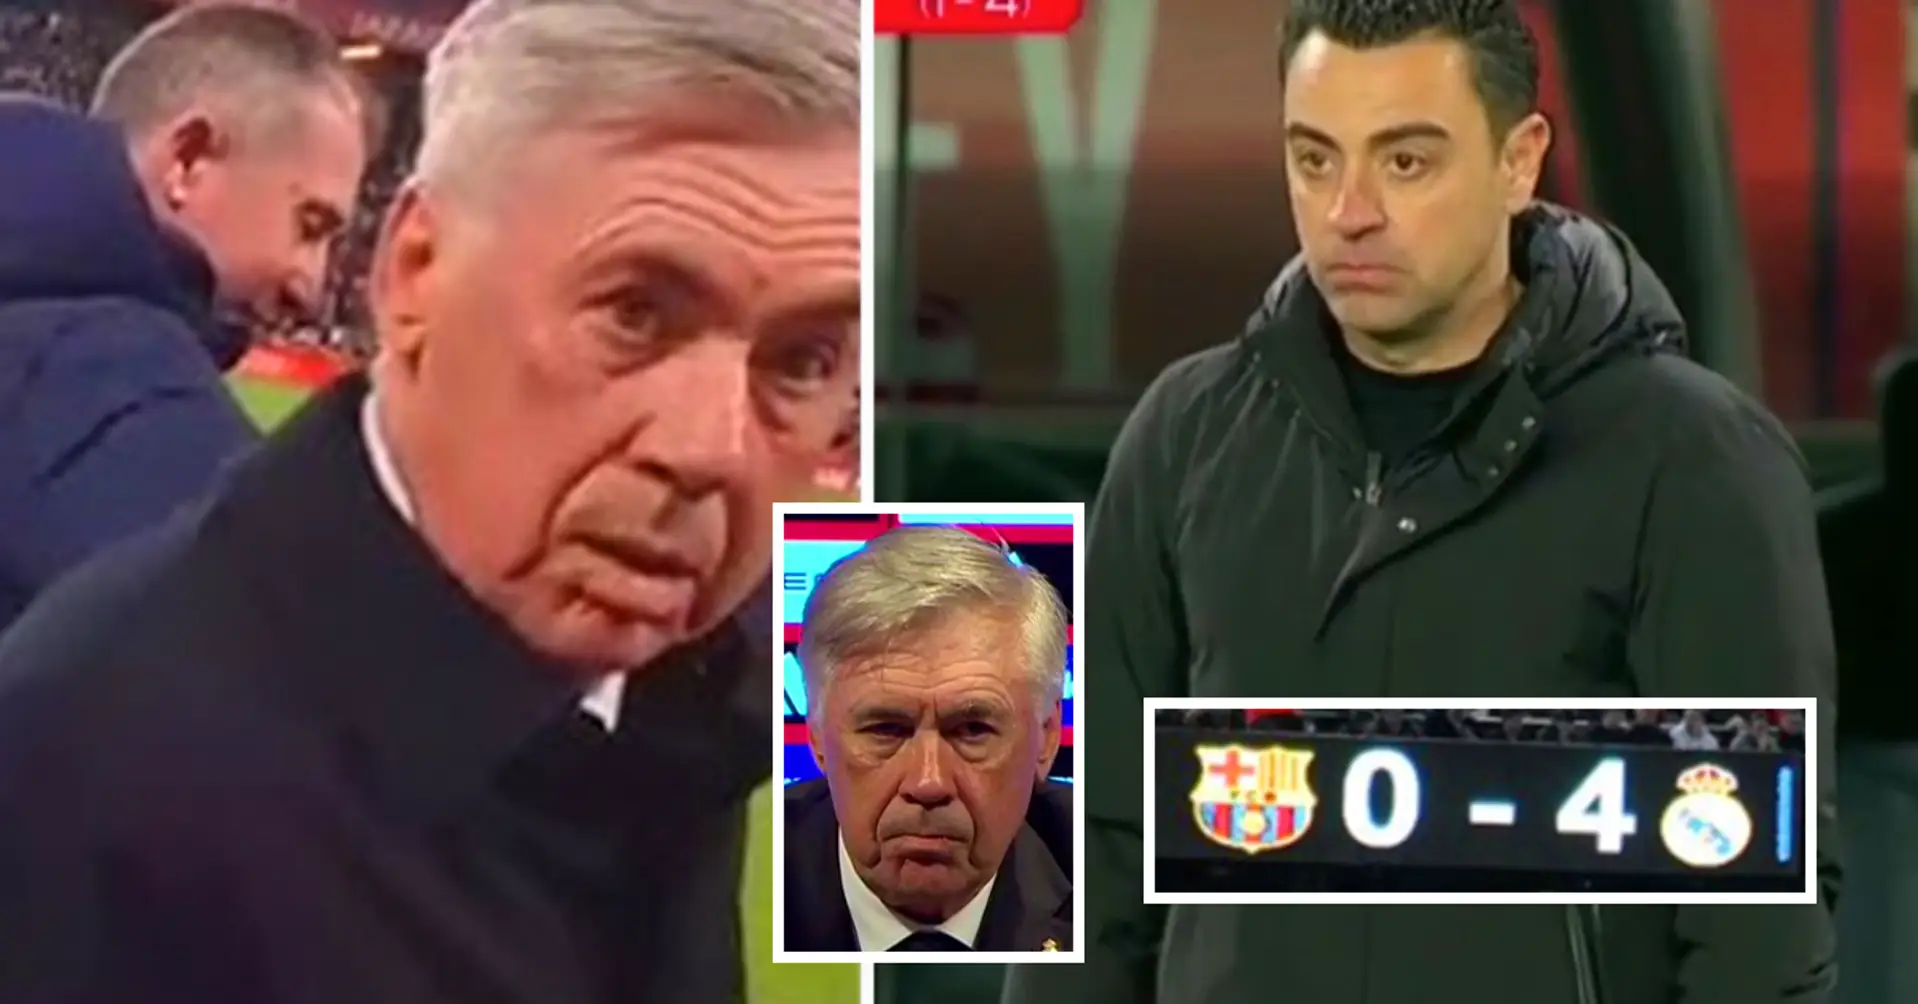 Die königliche Antwort. Ancelottis brillante Reaktion auf die Niederlage von Barça - er brauchte nur 3 Worte, um das Spiel zu beschreiben